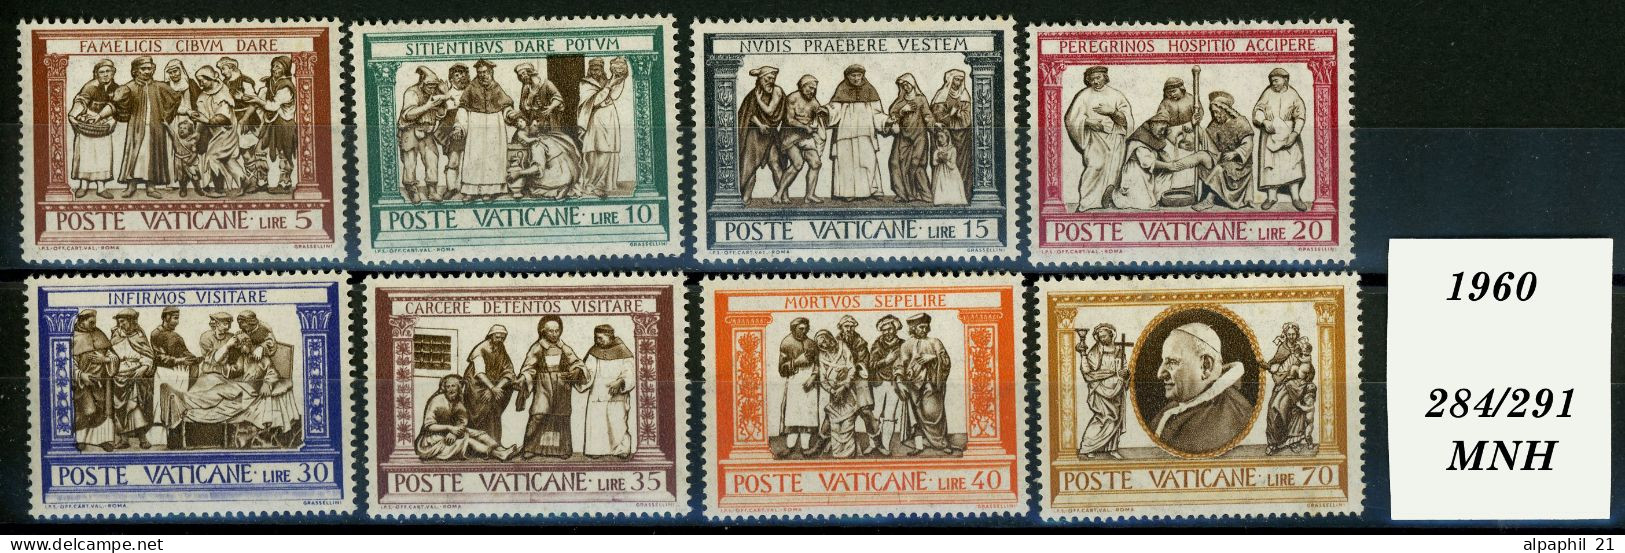 Città Del Vaticano: Feeding The Hungry, Della Robbia), 1960 - Unused Stamps